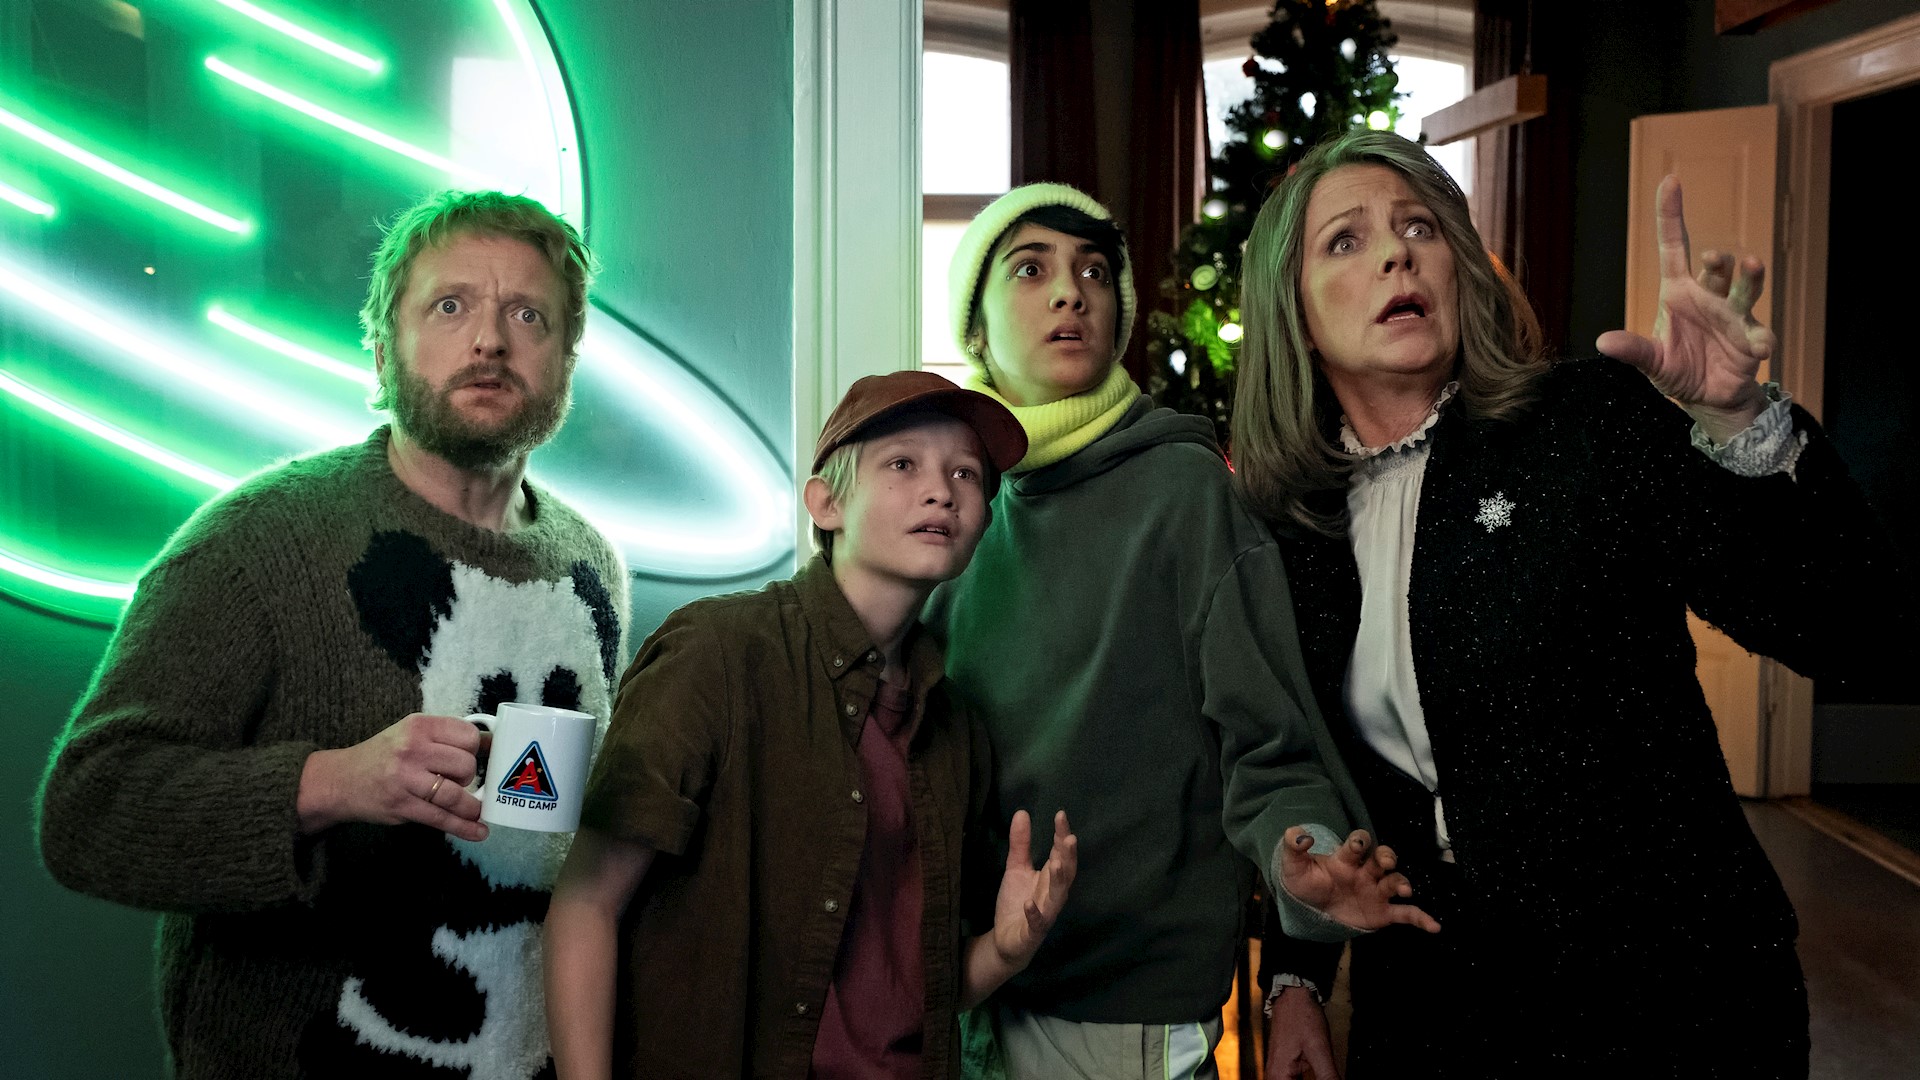 Fra venstre er det Martin Greis-Rosenthal, Bertil Smith, Shireen Noor Rasool og Søs Egelind, der alle medvirker i TV 2s nye familiejulekalender 'Kometernes jul', der har premiere i 2021. (Foto: Christian Geisnæs / TV 2)